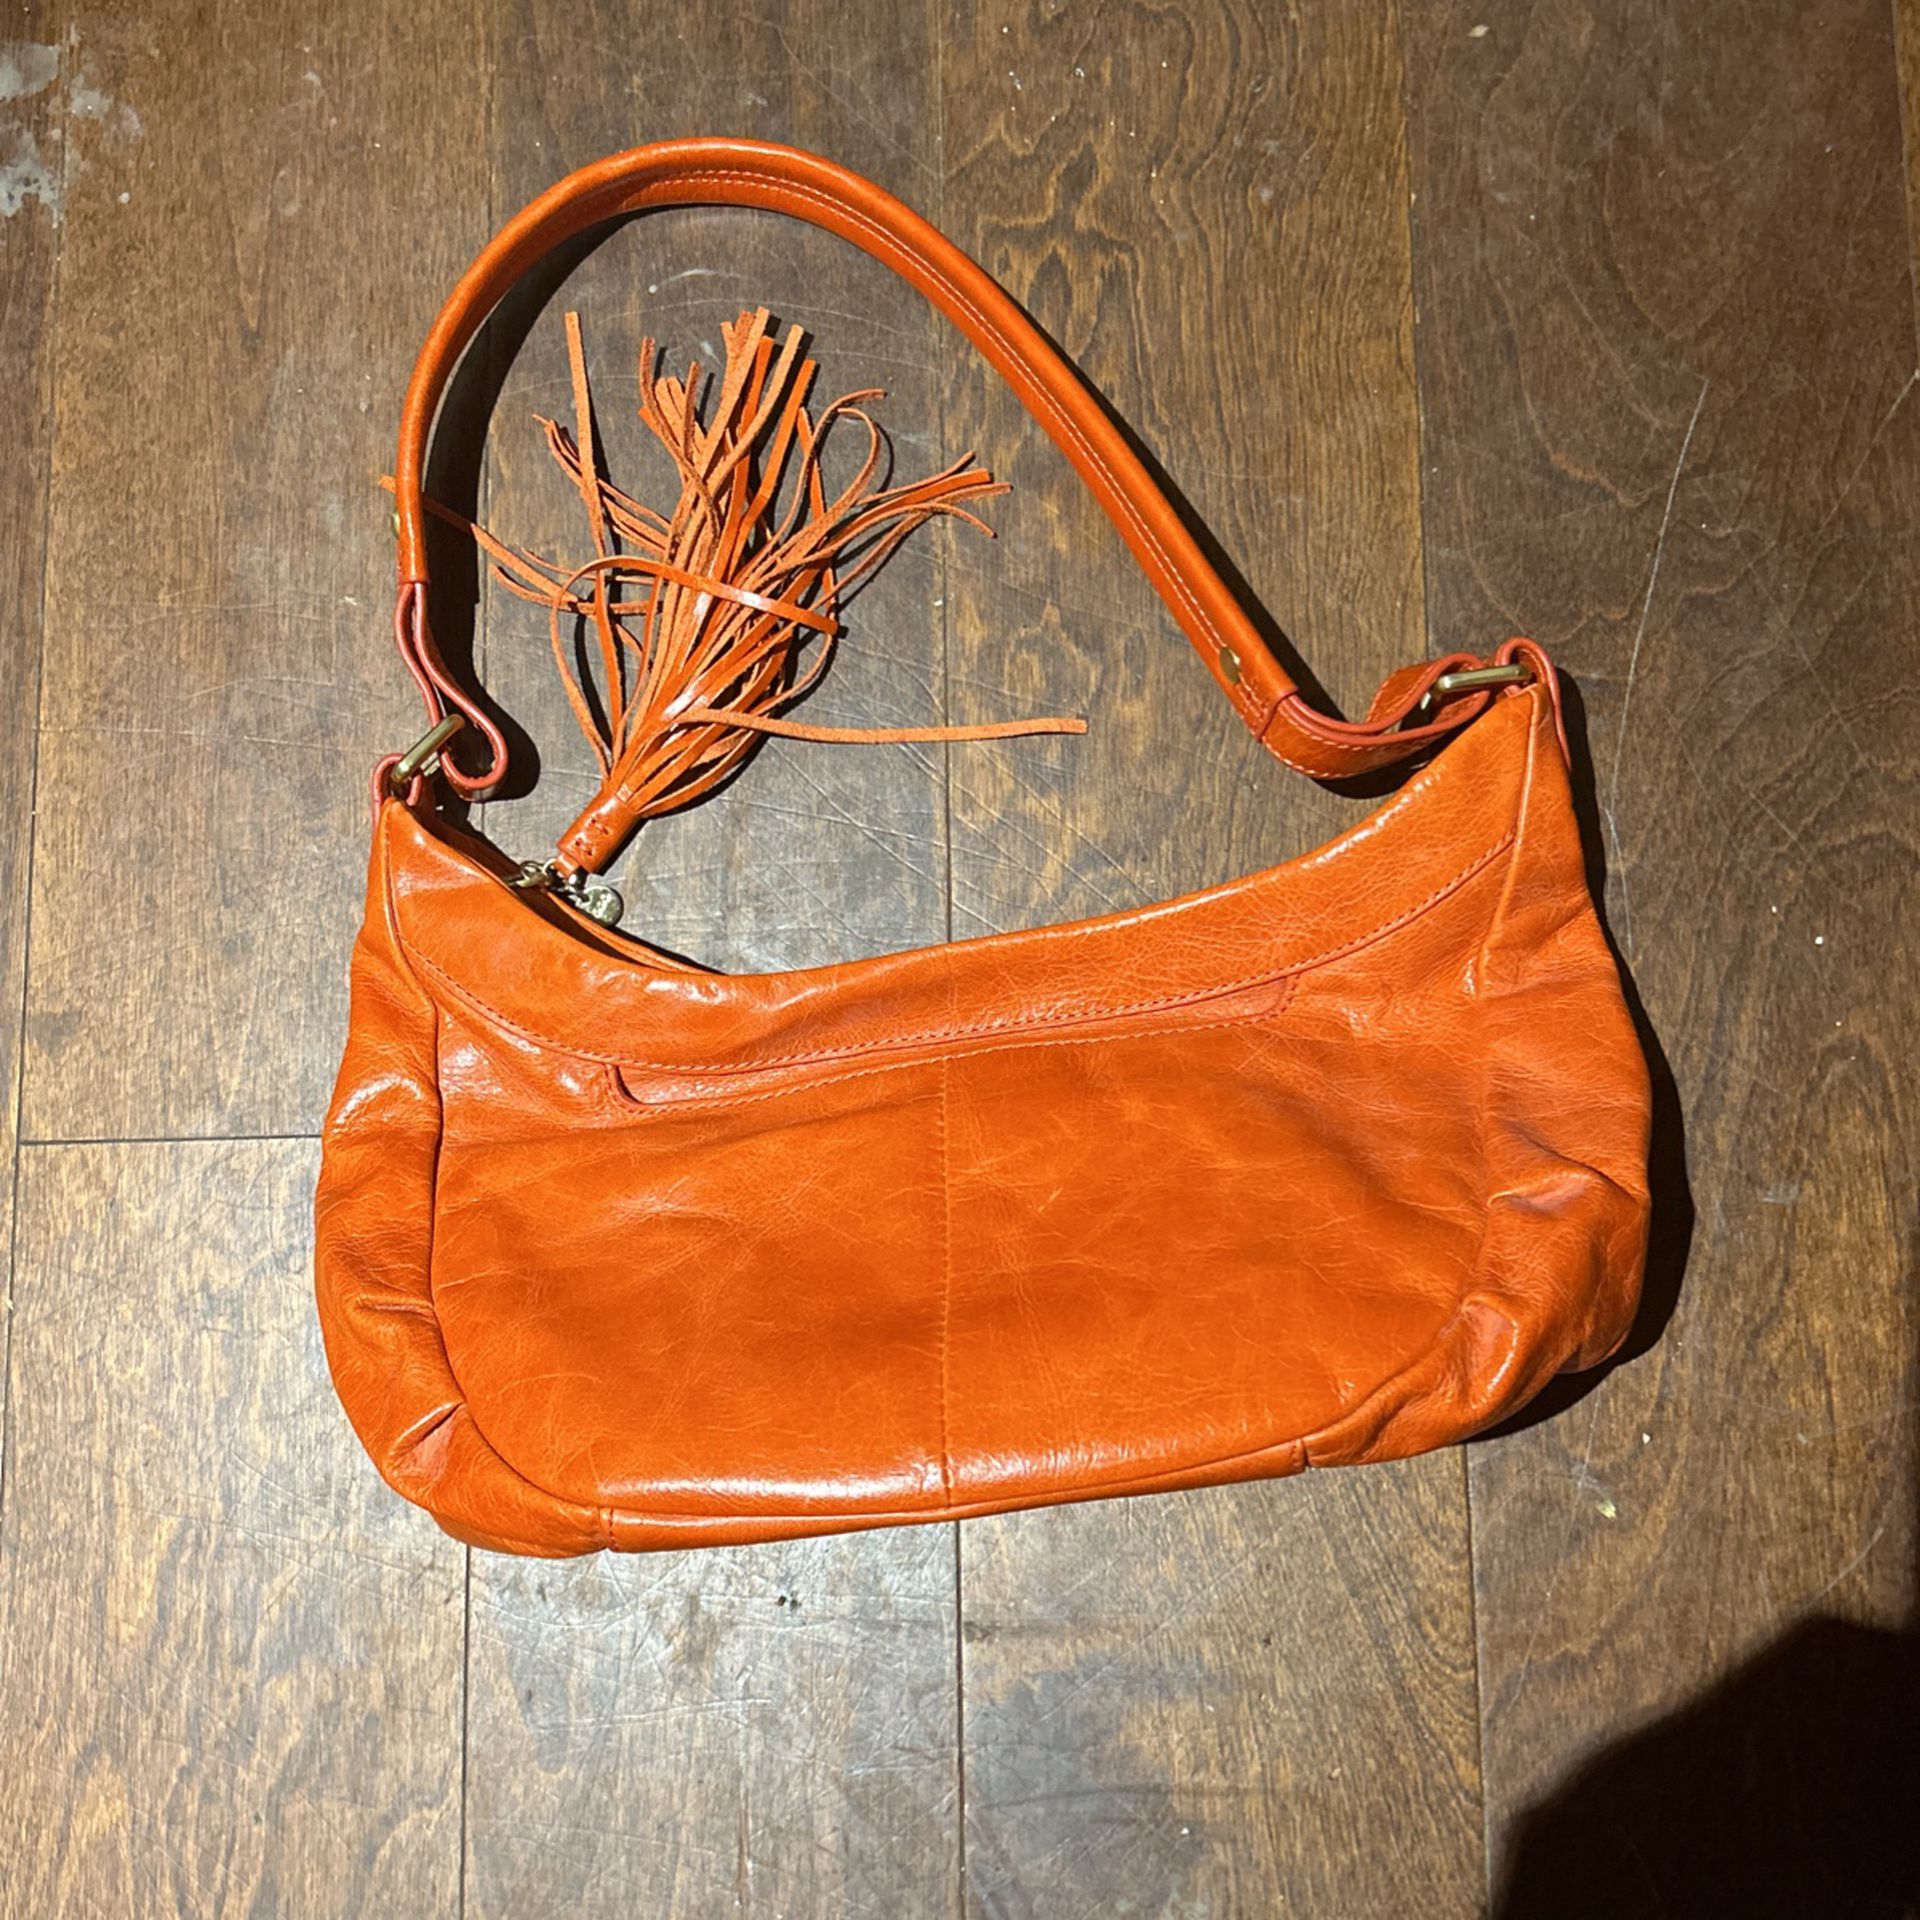 HOBO Brand Shoulder Bag With Fringe 